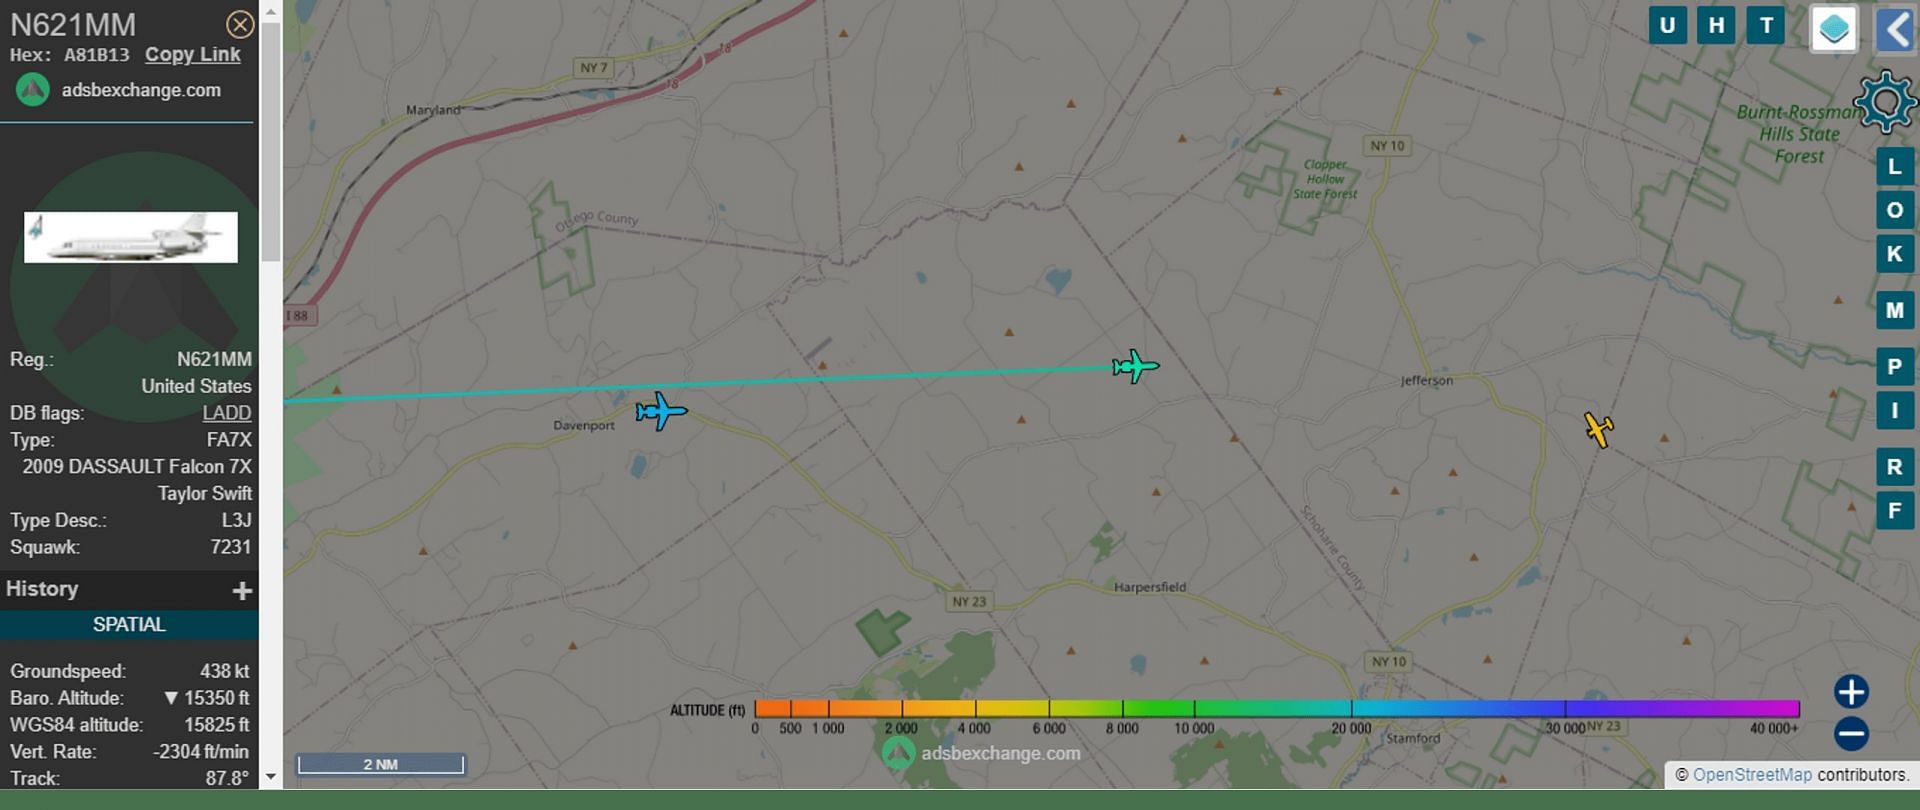 Swift&#039;s jet flight track (Image via ADSBexchange.com)